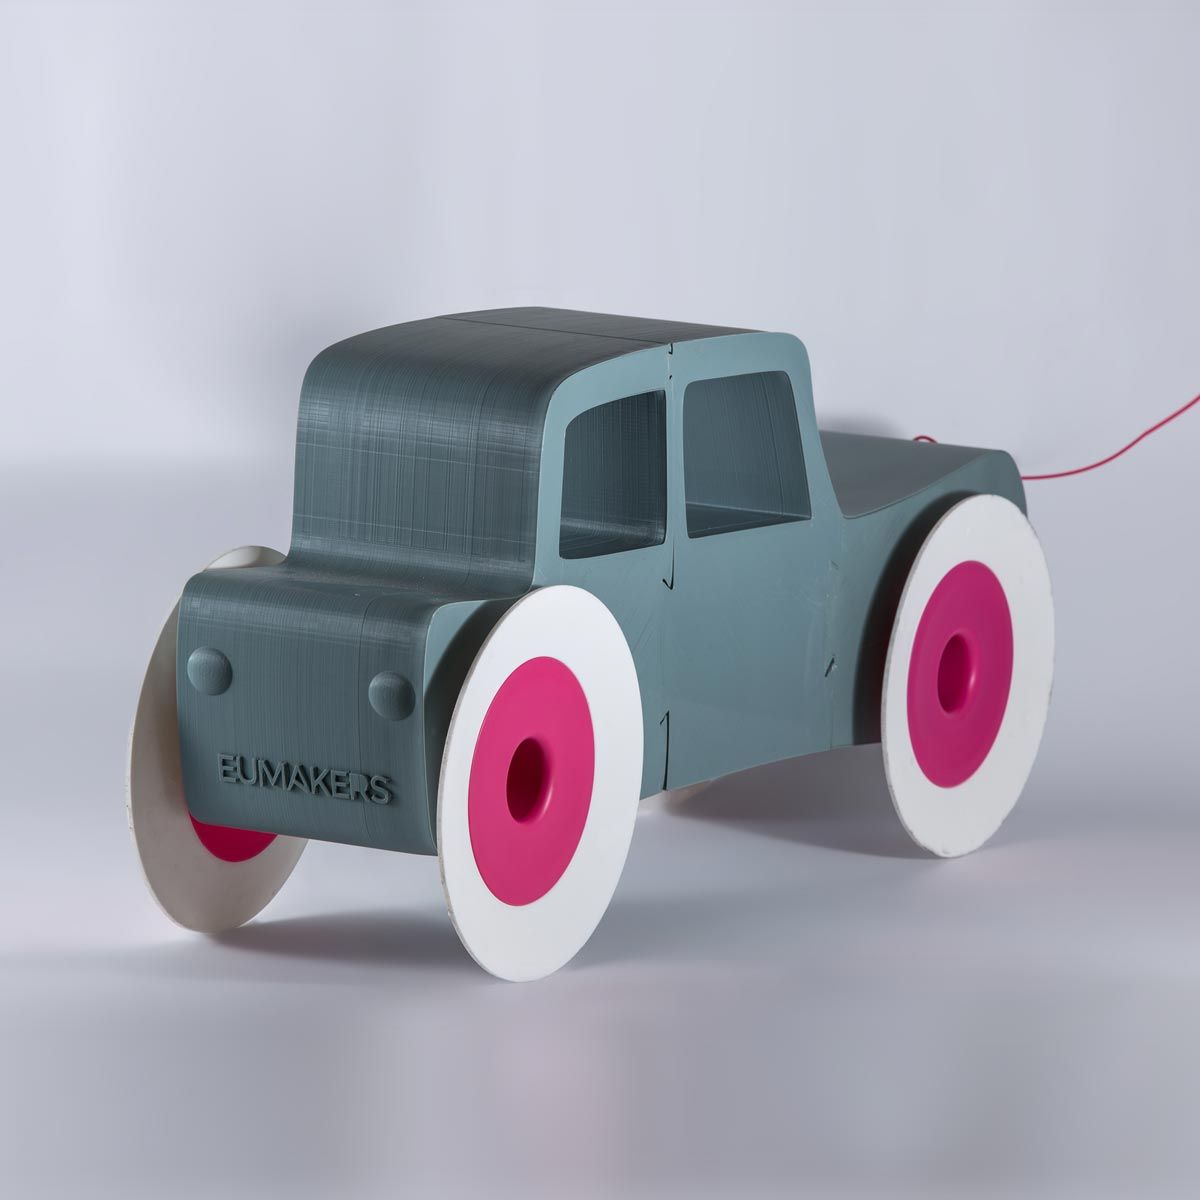 EUMAKERS' Car [Toy Car]